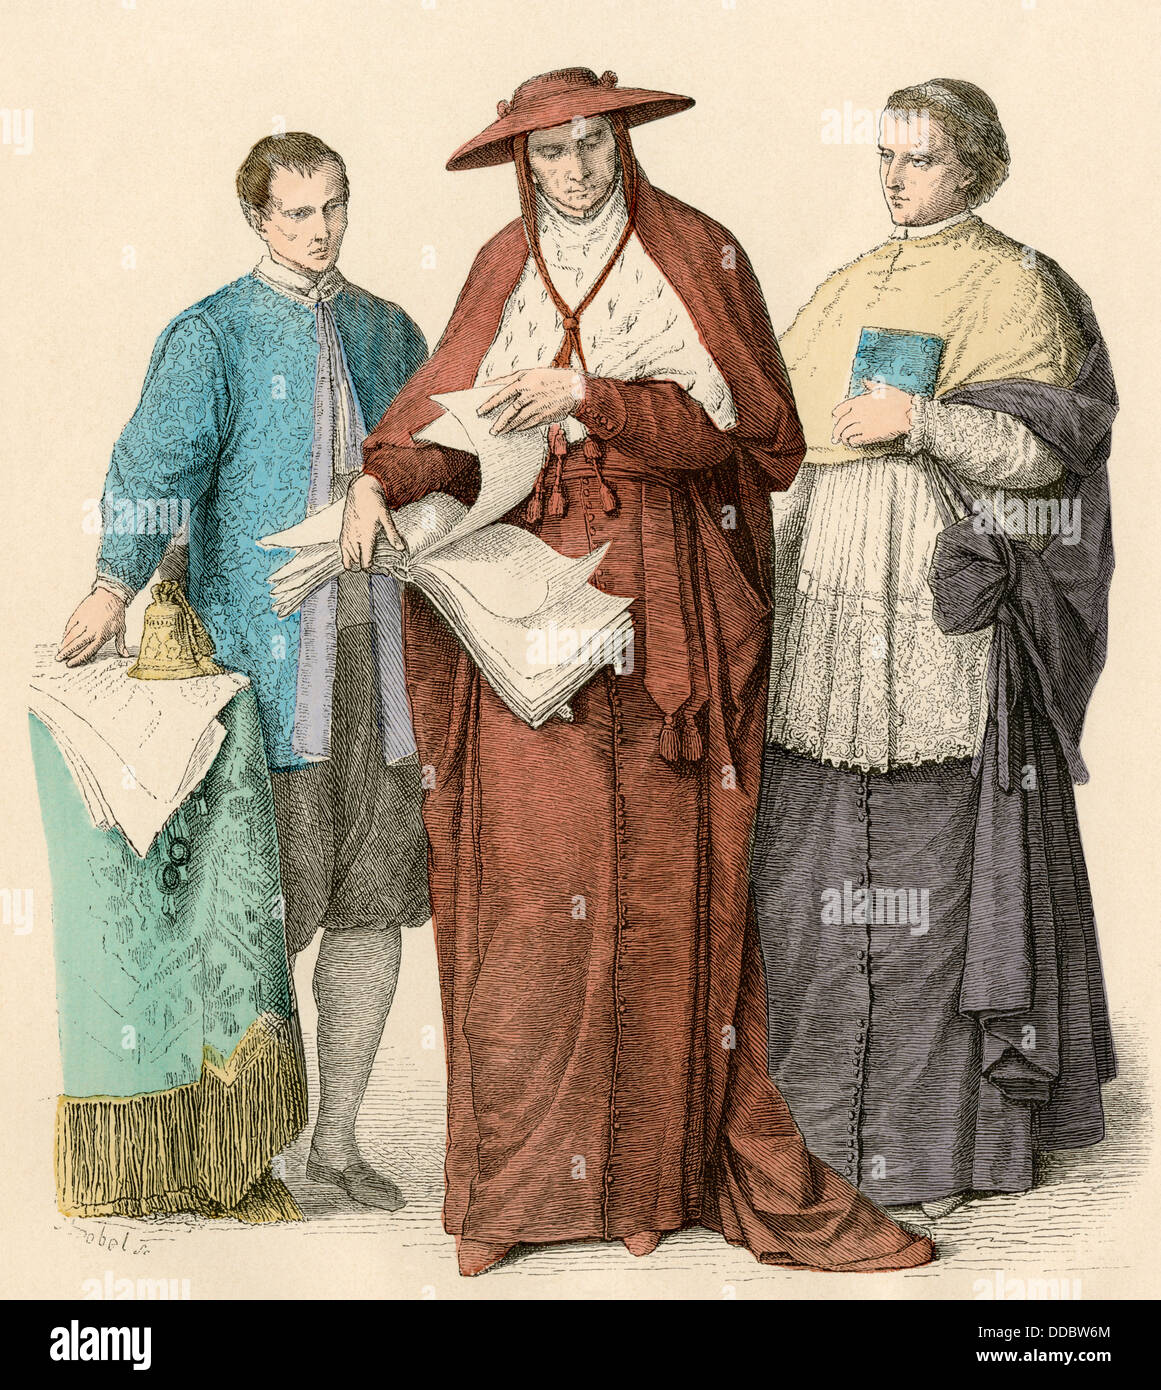 Vestito da Cardinale Richelieu uomo adulto con finiture in pizzo